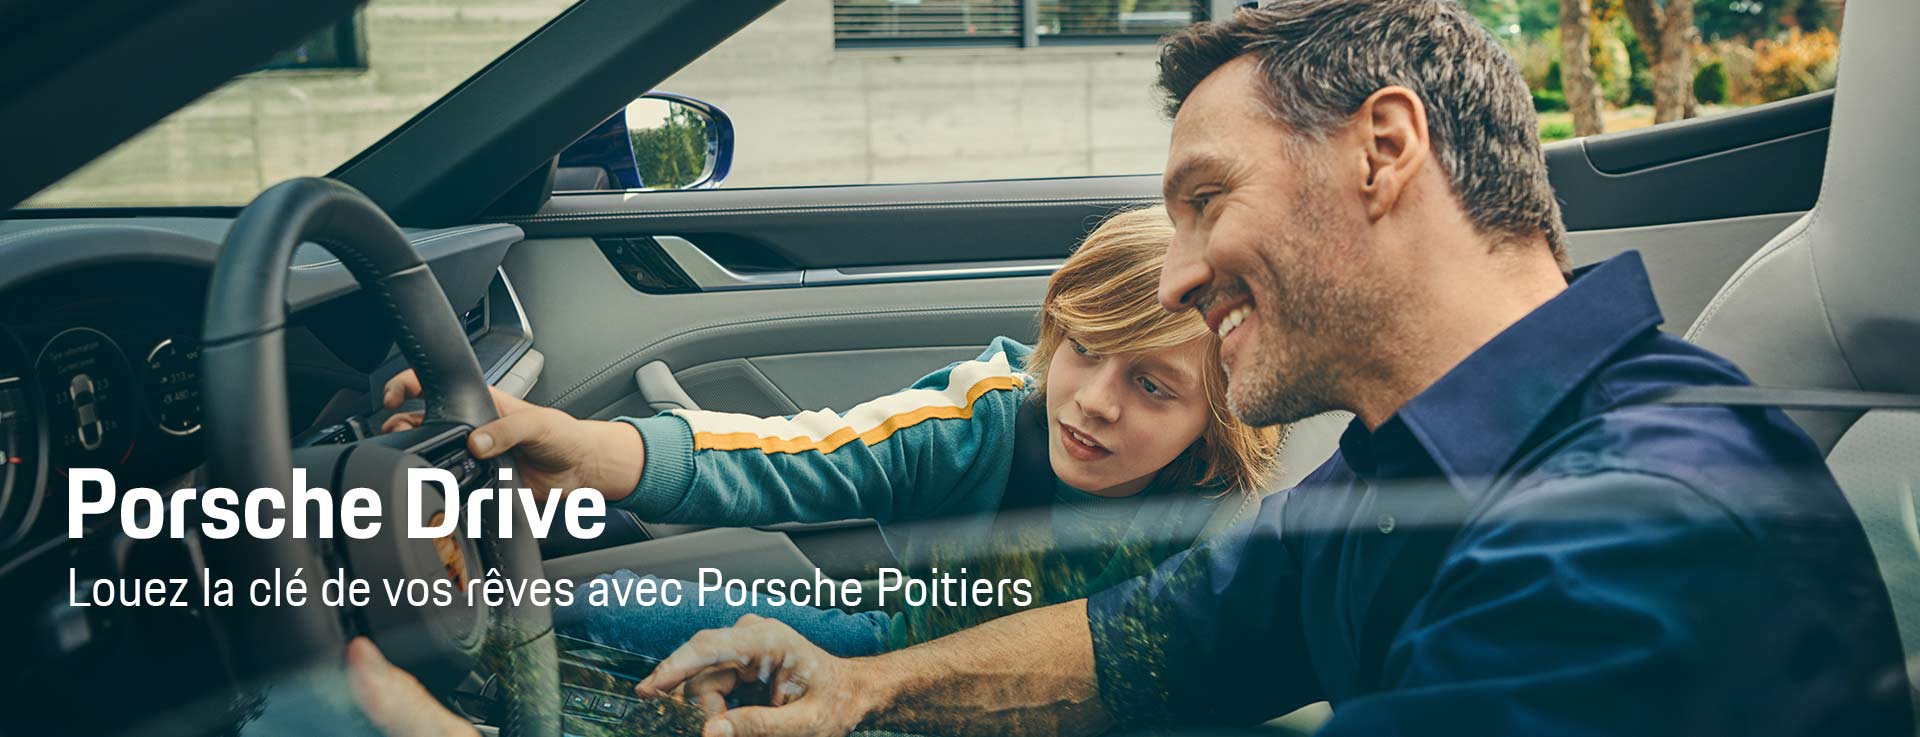 Porsche Drive Rental. Louez la clé de vos rêves avec Porsche Poitiers.